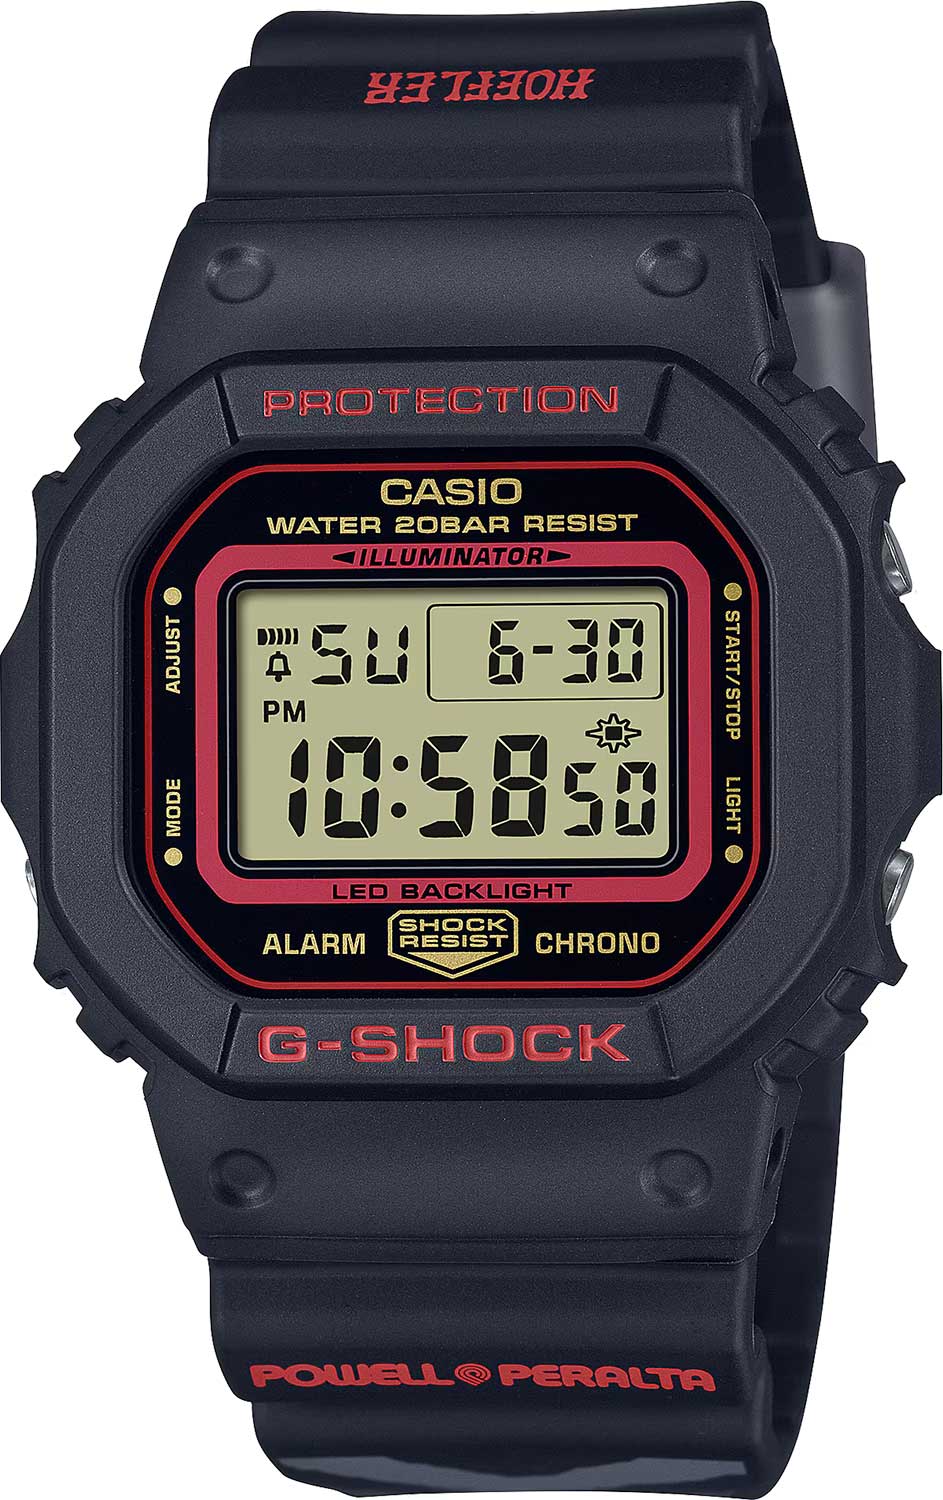 Наручные часы Casio G-SHOCK DW-5600KH-1 — купить в интернет-магазине AllTime.ru по лучшей цене, фото, характеристики, описание